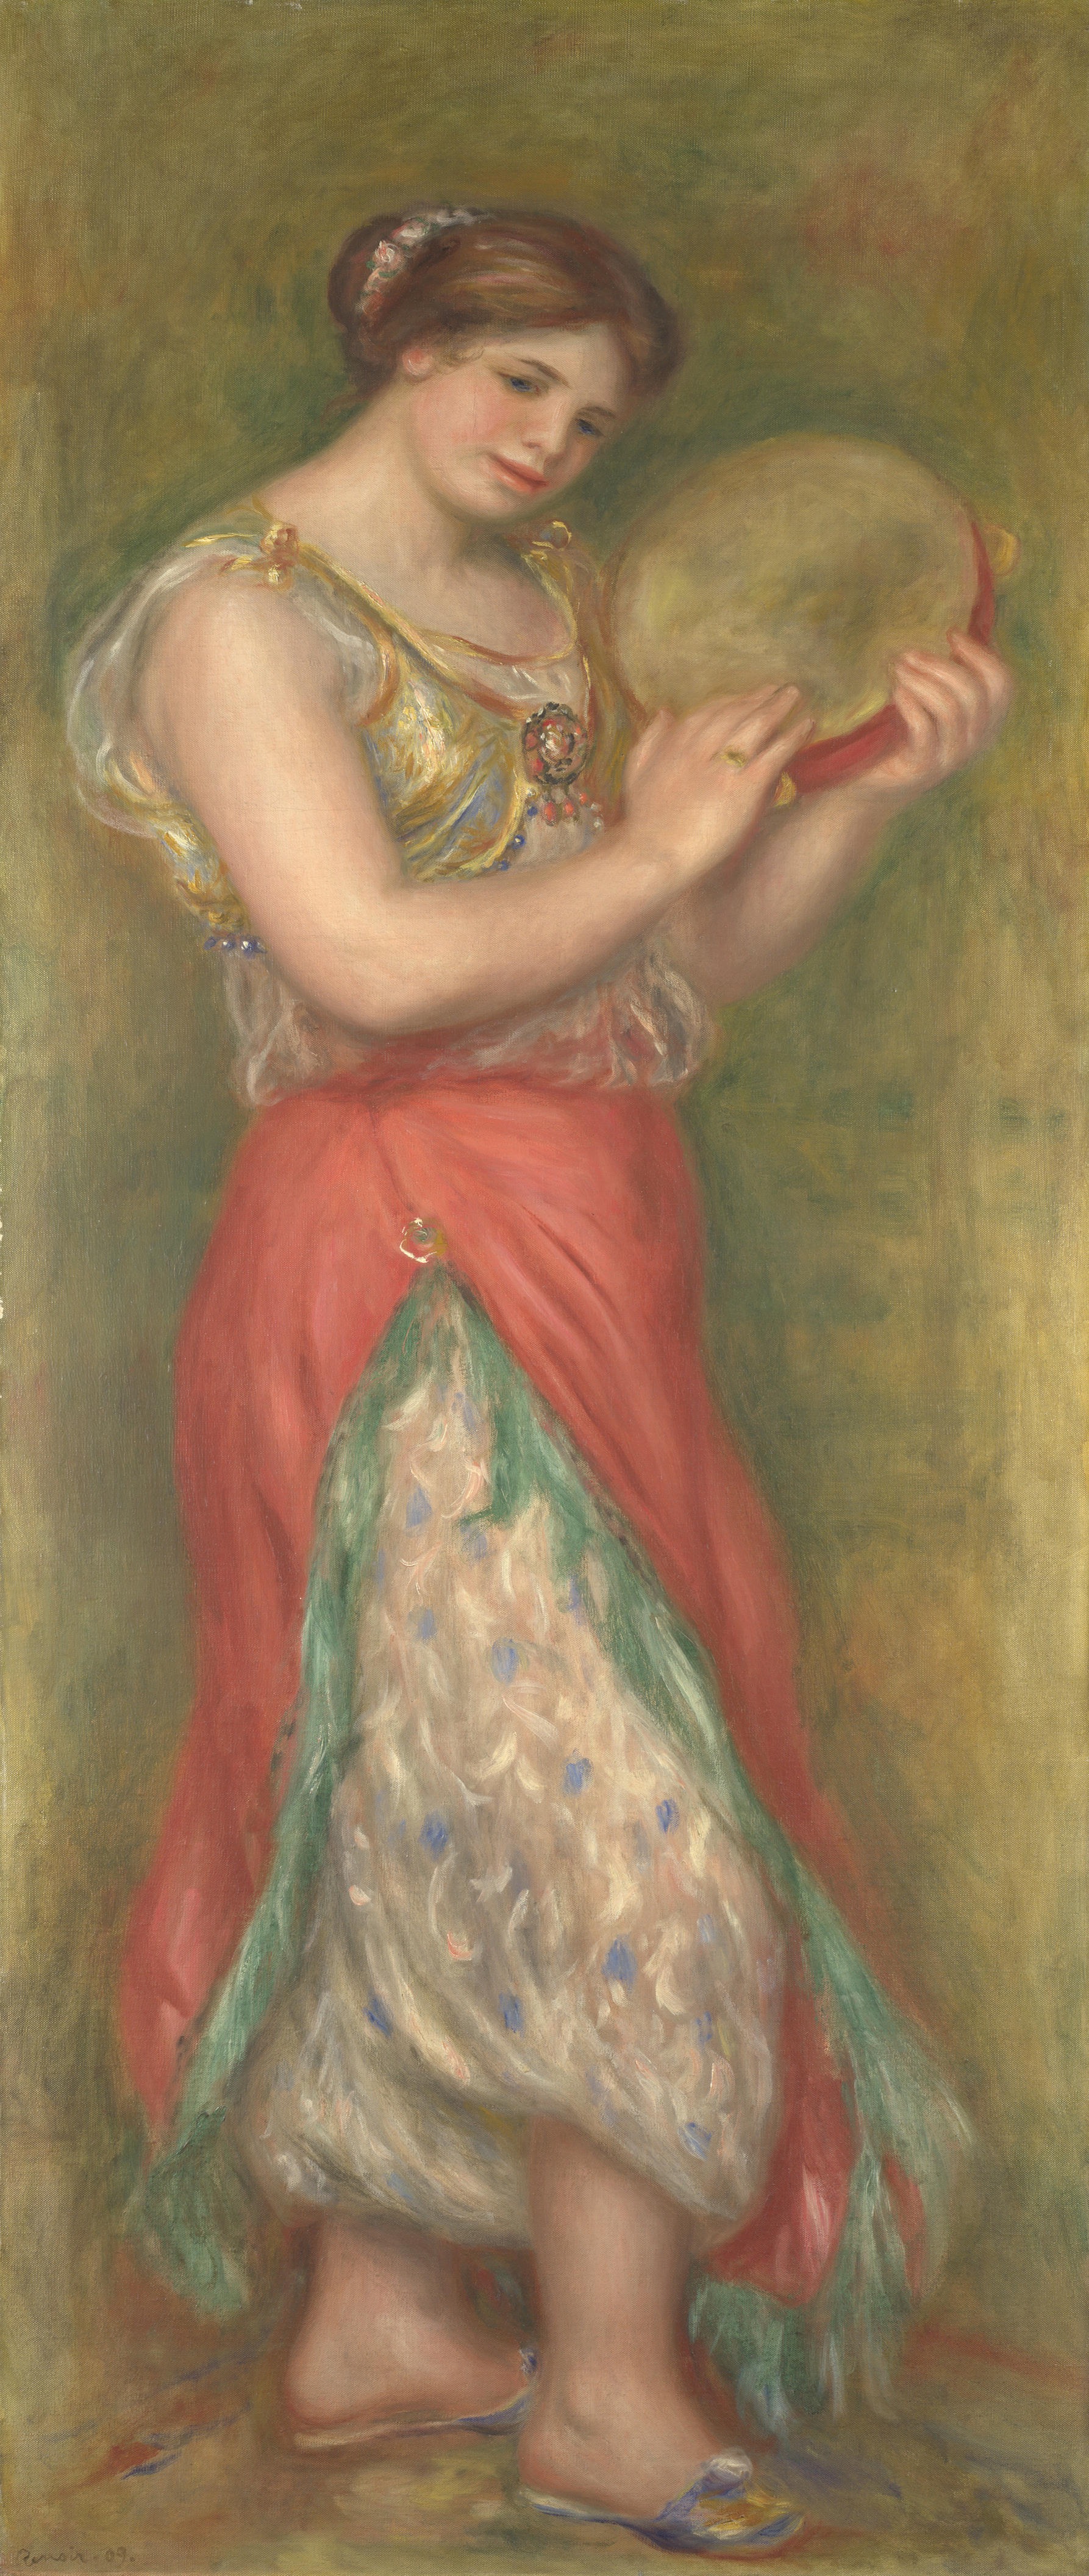 Ренуар. Танцующая девушка с тамбурином. 1909